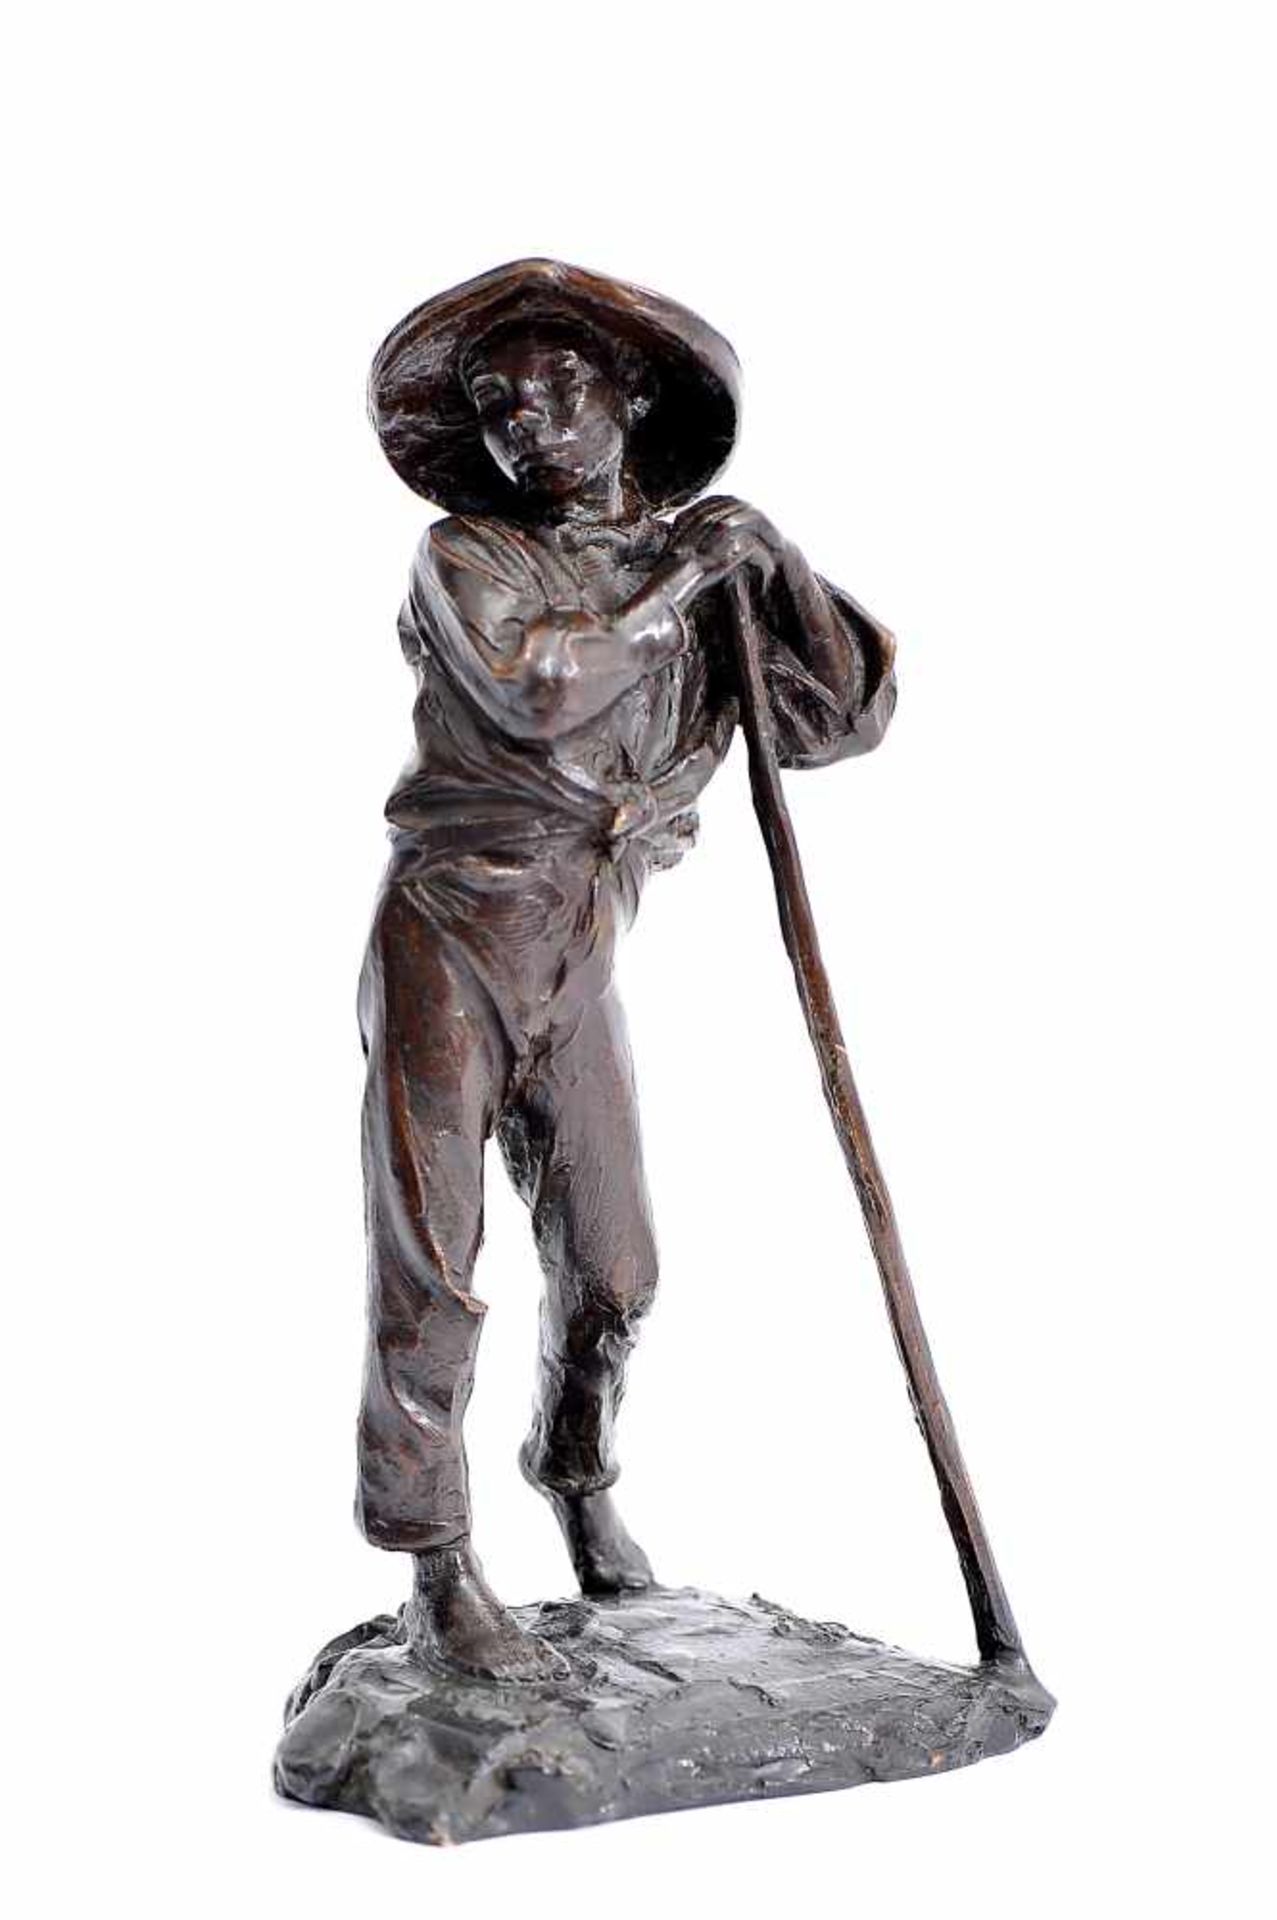 JOÃO DA SILVA -1880-1960, A Shepherd, bronze sculpture, signed and dated Monforte - 1924, casting